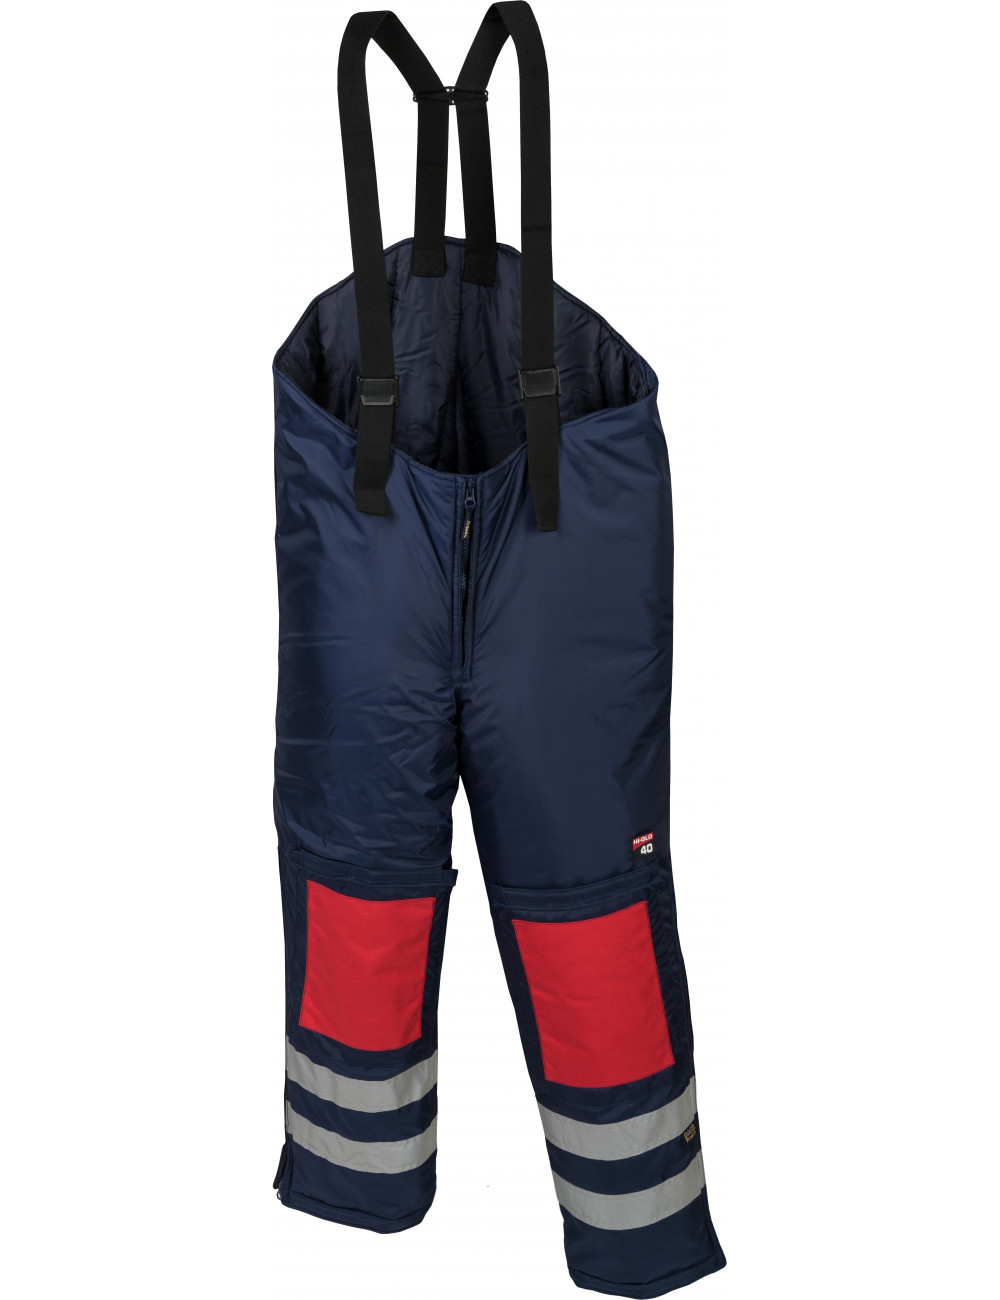 Spodnie do mroźni i chłodni Hi-Glo 40 Freeze Trousers Goldfreeze, do -83,3 ° C